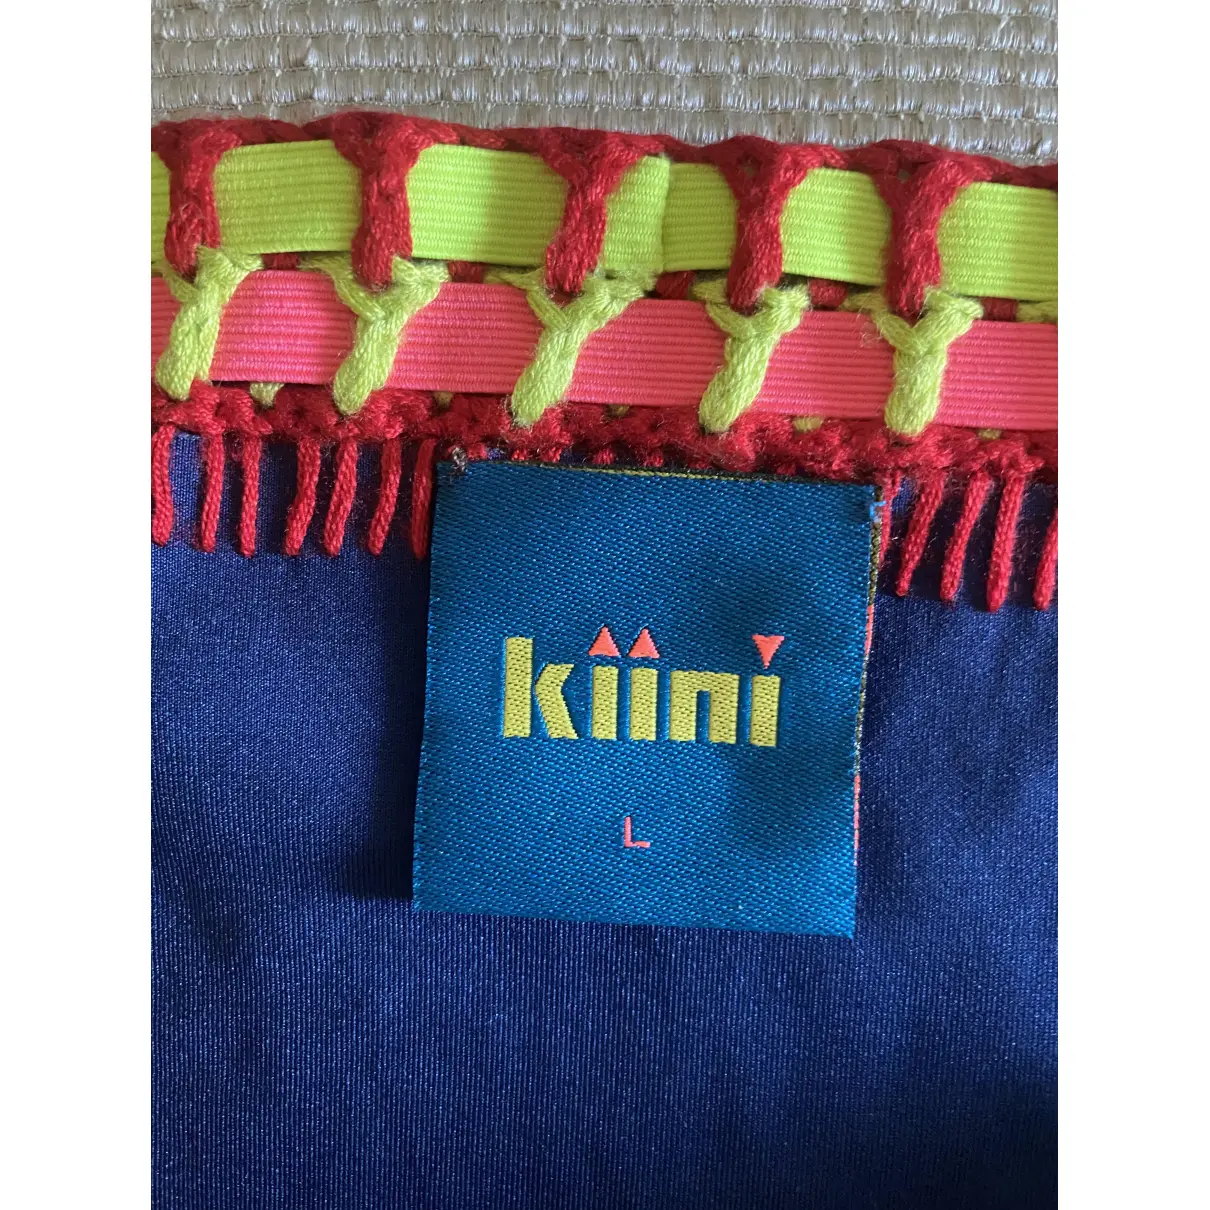 Buy Kiini Two-piece swimsuit online